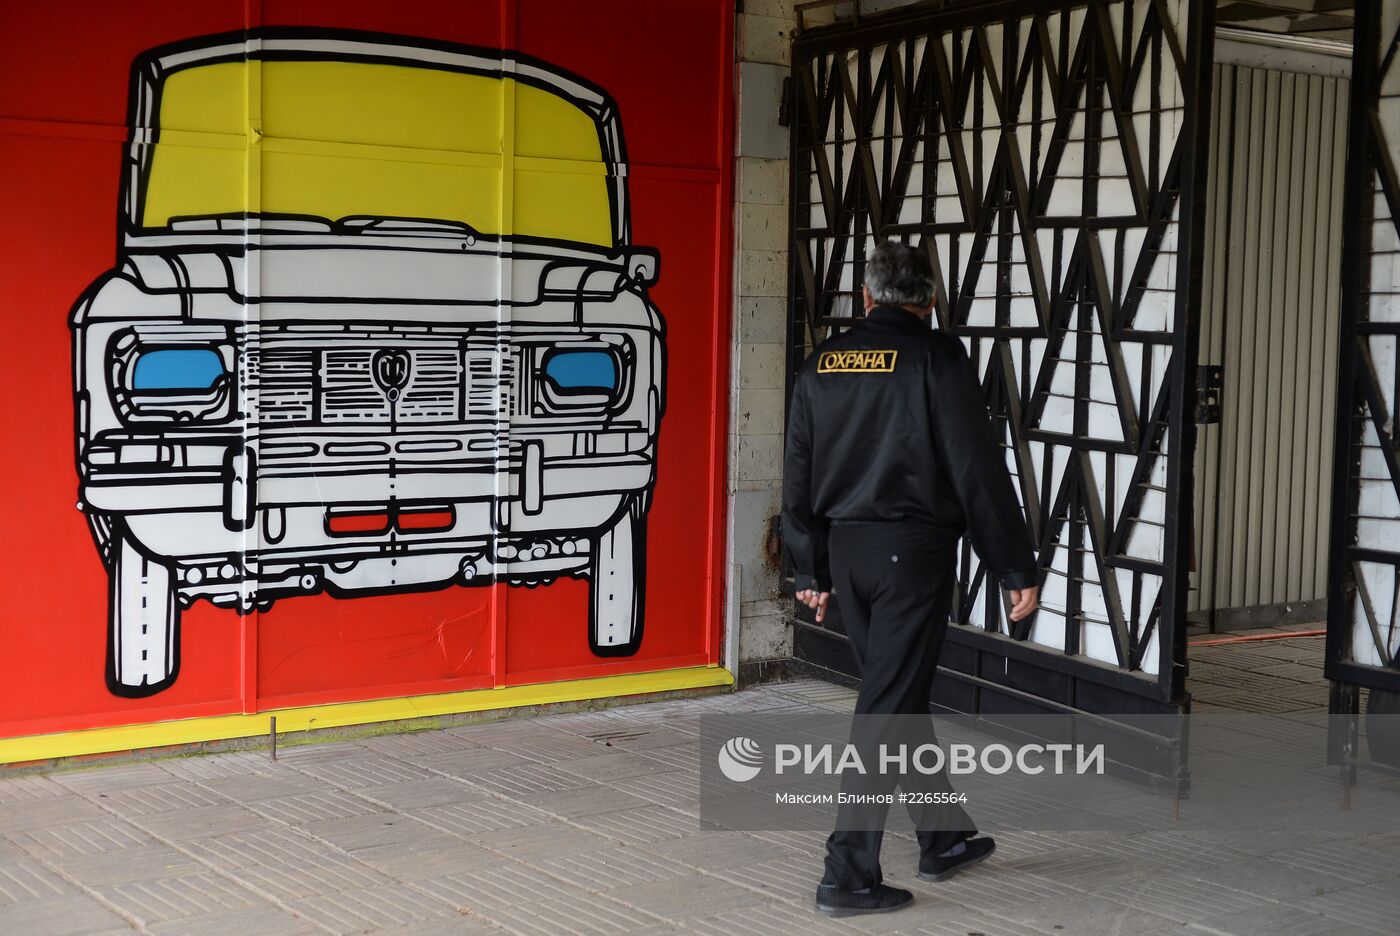 Граффити художник Petro Aesthetics разрисовал стены КЦ "Москвич"